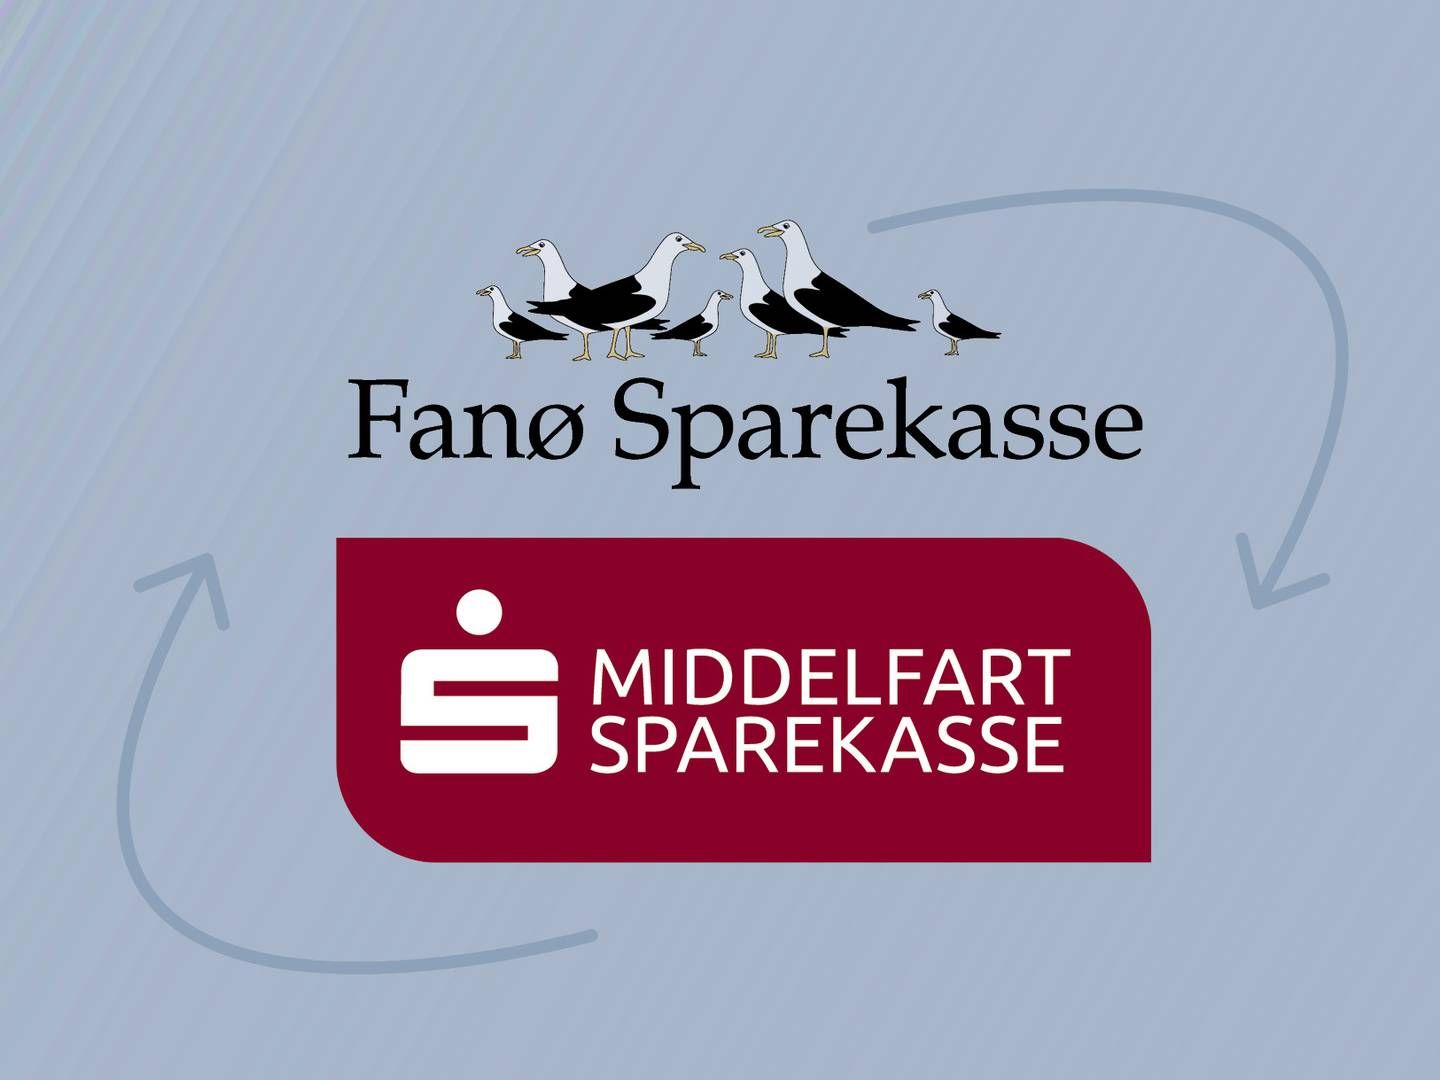 Middelfart Sparekasse opsluger efter planen Fanø Sparekasse. | Foto: PR/Fanø Sparekasse